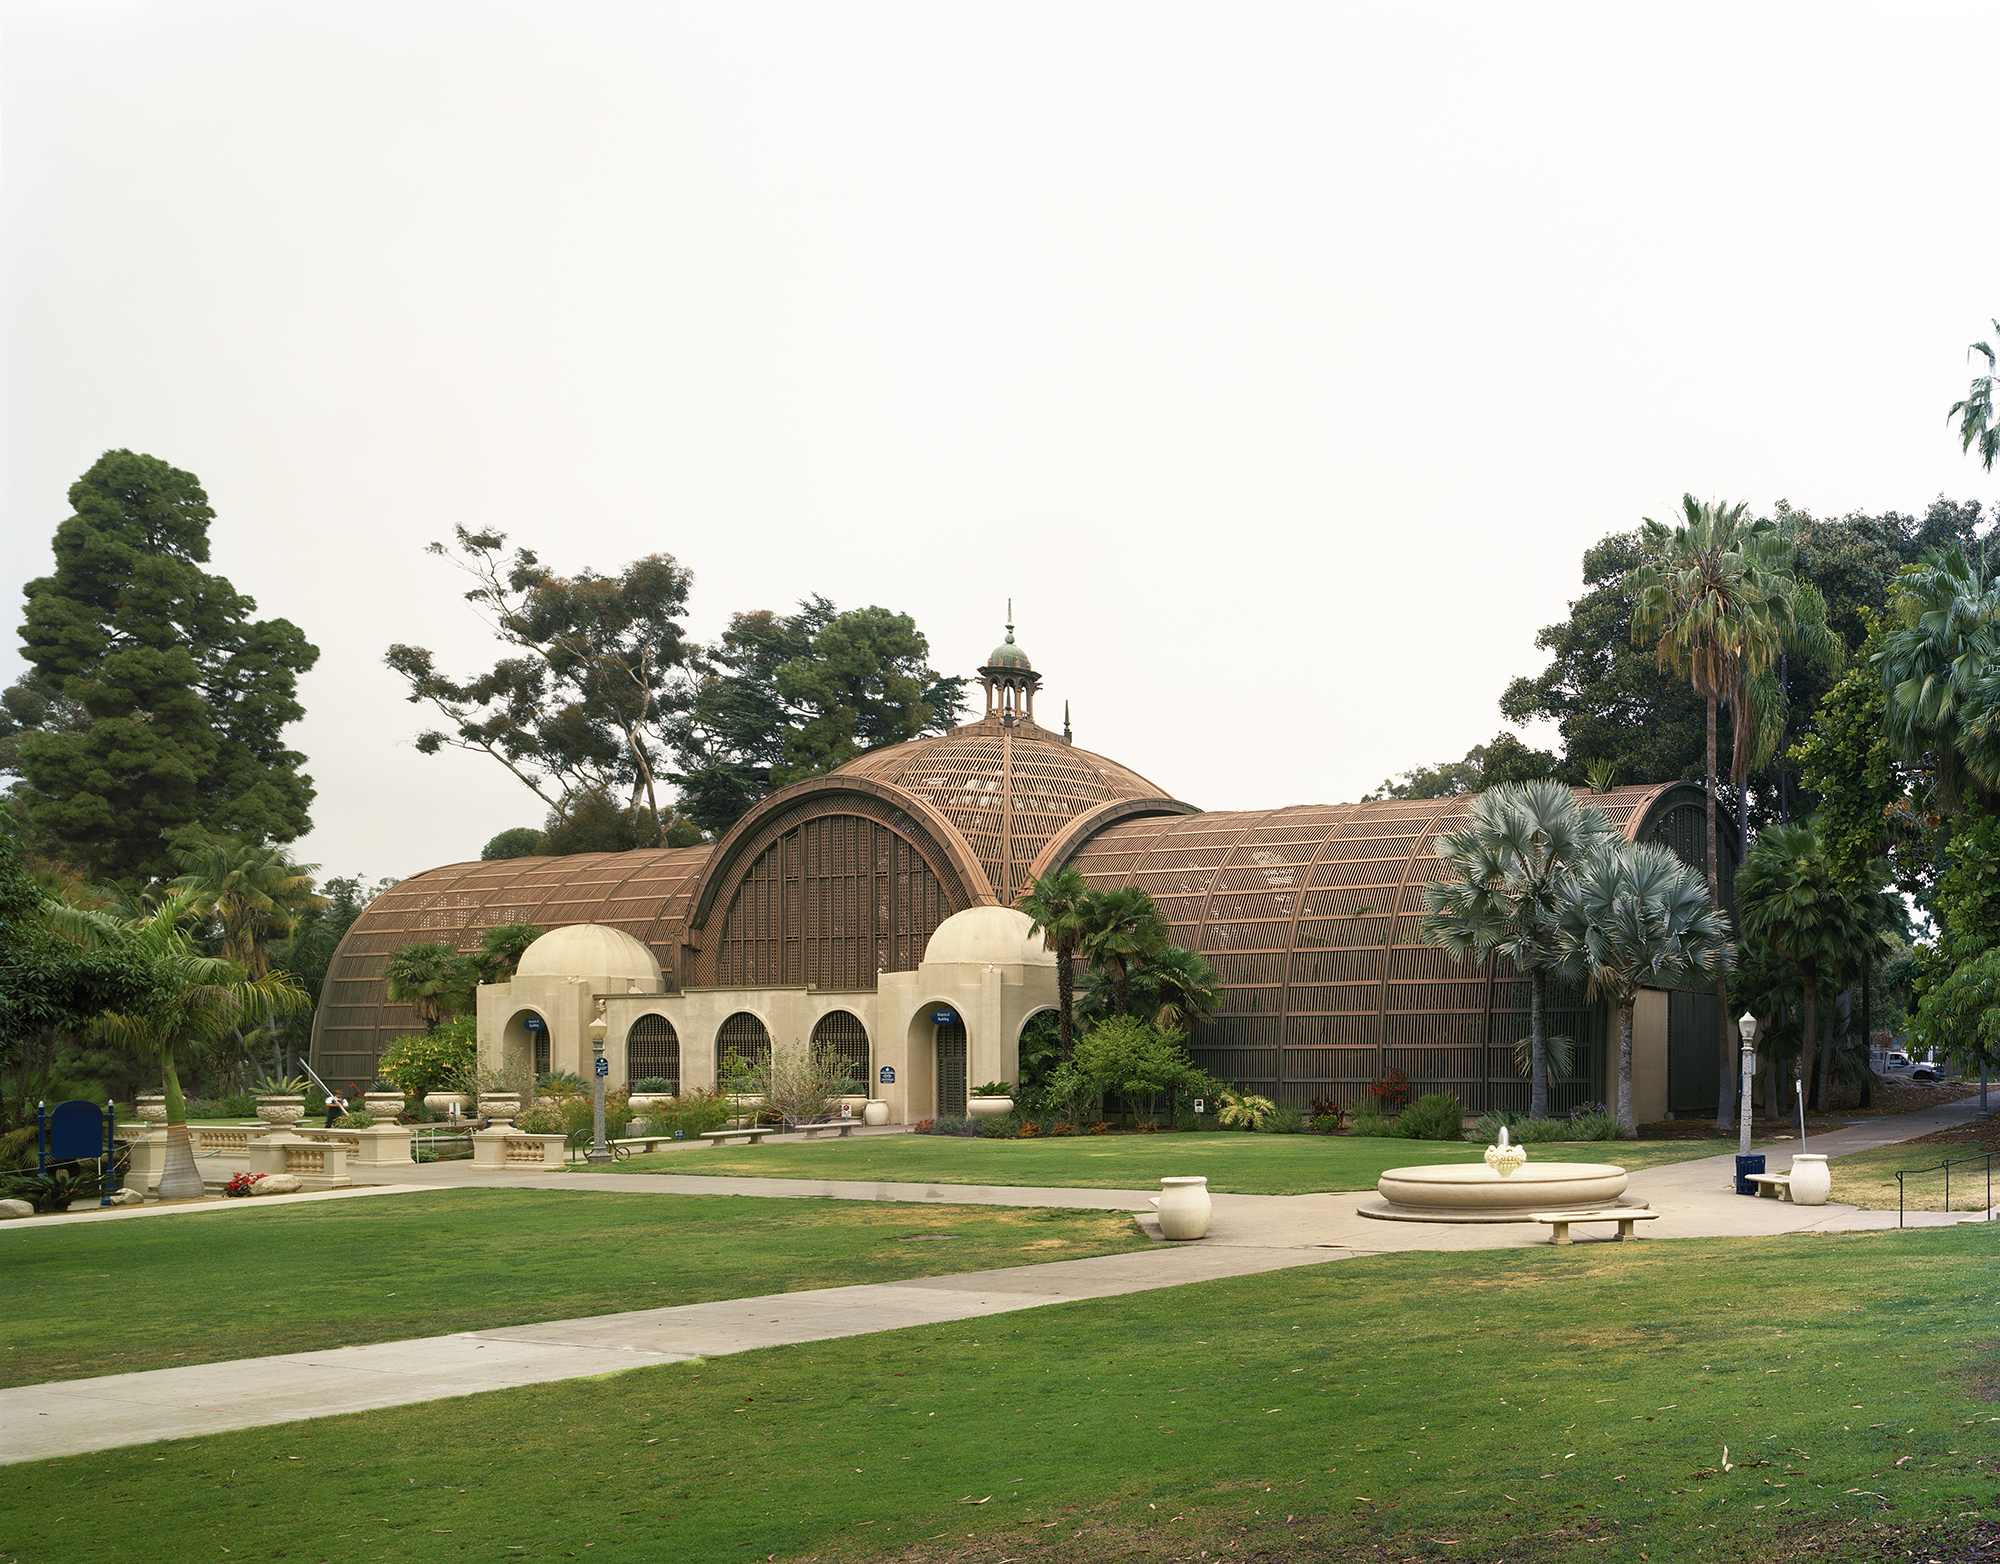 Ботанический сад со стеклянным куполом на территории парка Бальбоа в Сан-Диего был построен к Всемирной выставке в Сан-Франциско, проводившейся в 1915 году в честь открытия Панамского канала. Выставка имела большой успех, за два года ее посетили около 18 млн человек, включая американских изобретателей Генри Форда и Томаса Эдисона.

Сегодня сооружение входит в число культурных объектов парка Бальбоа, в нем расположен большой ботанический сад, включающий более чем 2,1 тыс. видов постоянных растений.
